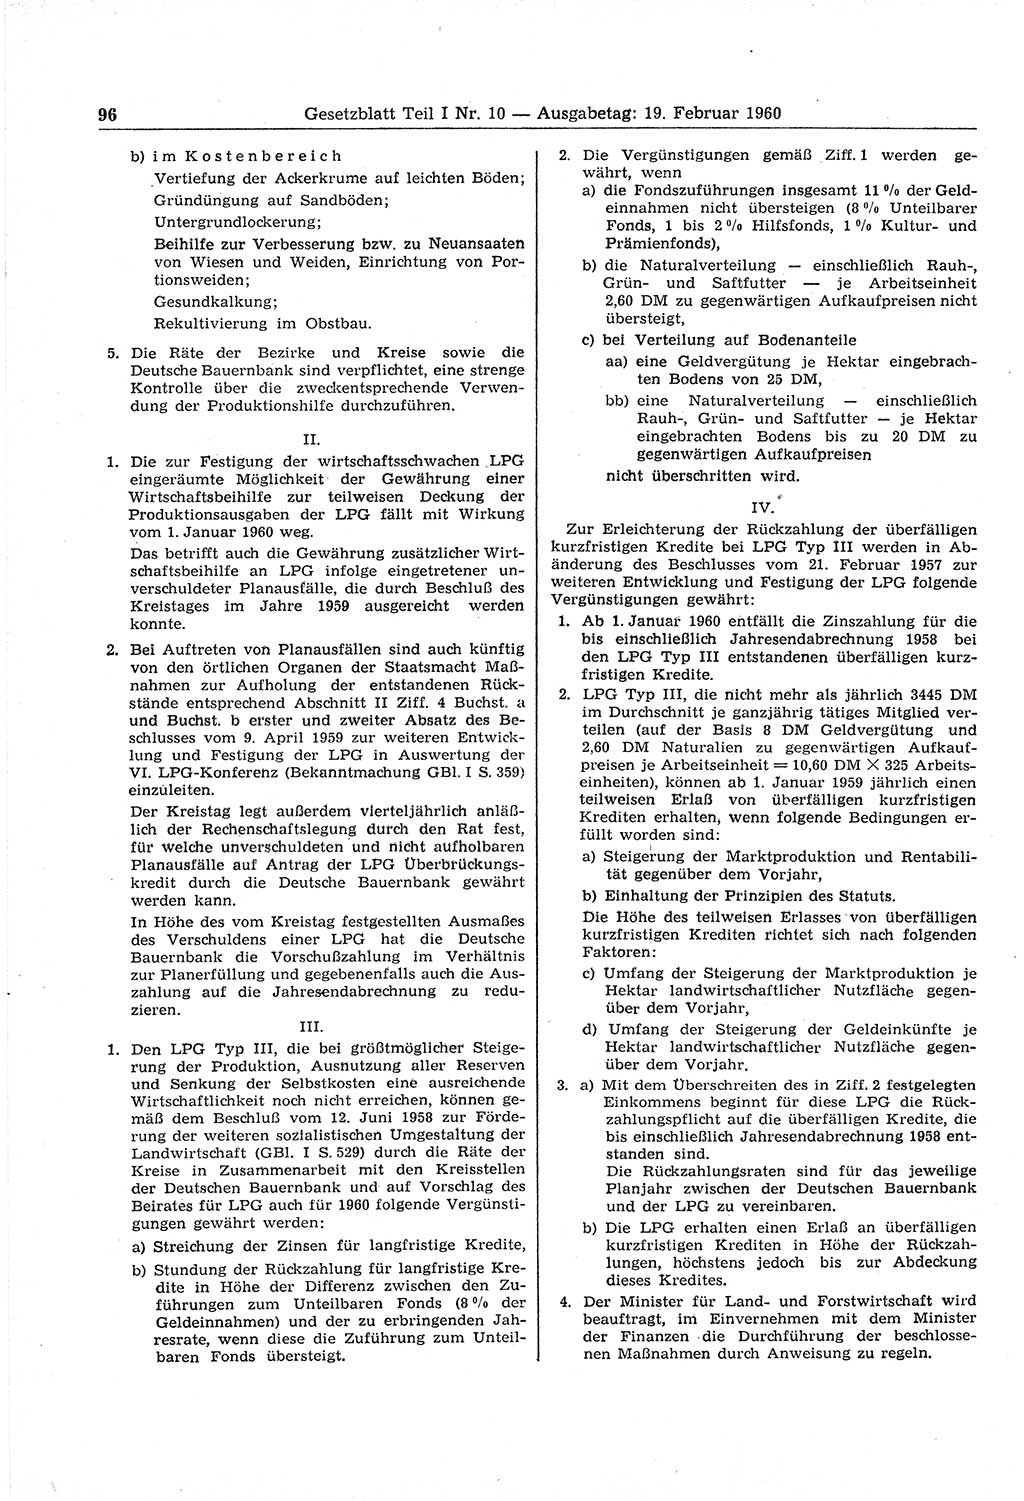 Gesetzblatt (GBl.) der Deutschen Demokratischen Republik (DDR) Teil Ⅰ 1960, Seite 96 (GBl. DDR Ⅰ 1960, S. 96)